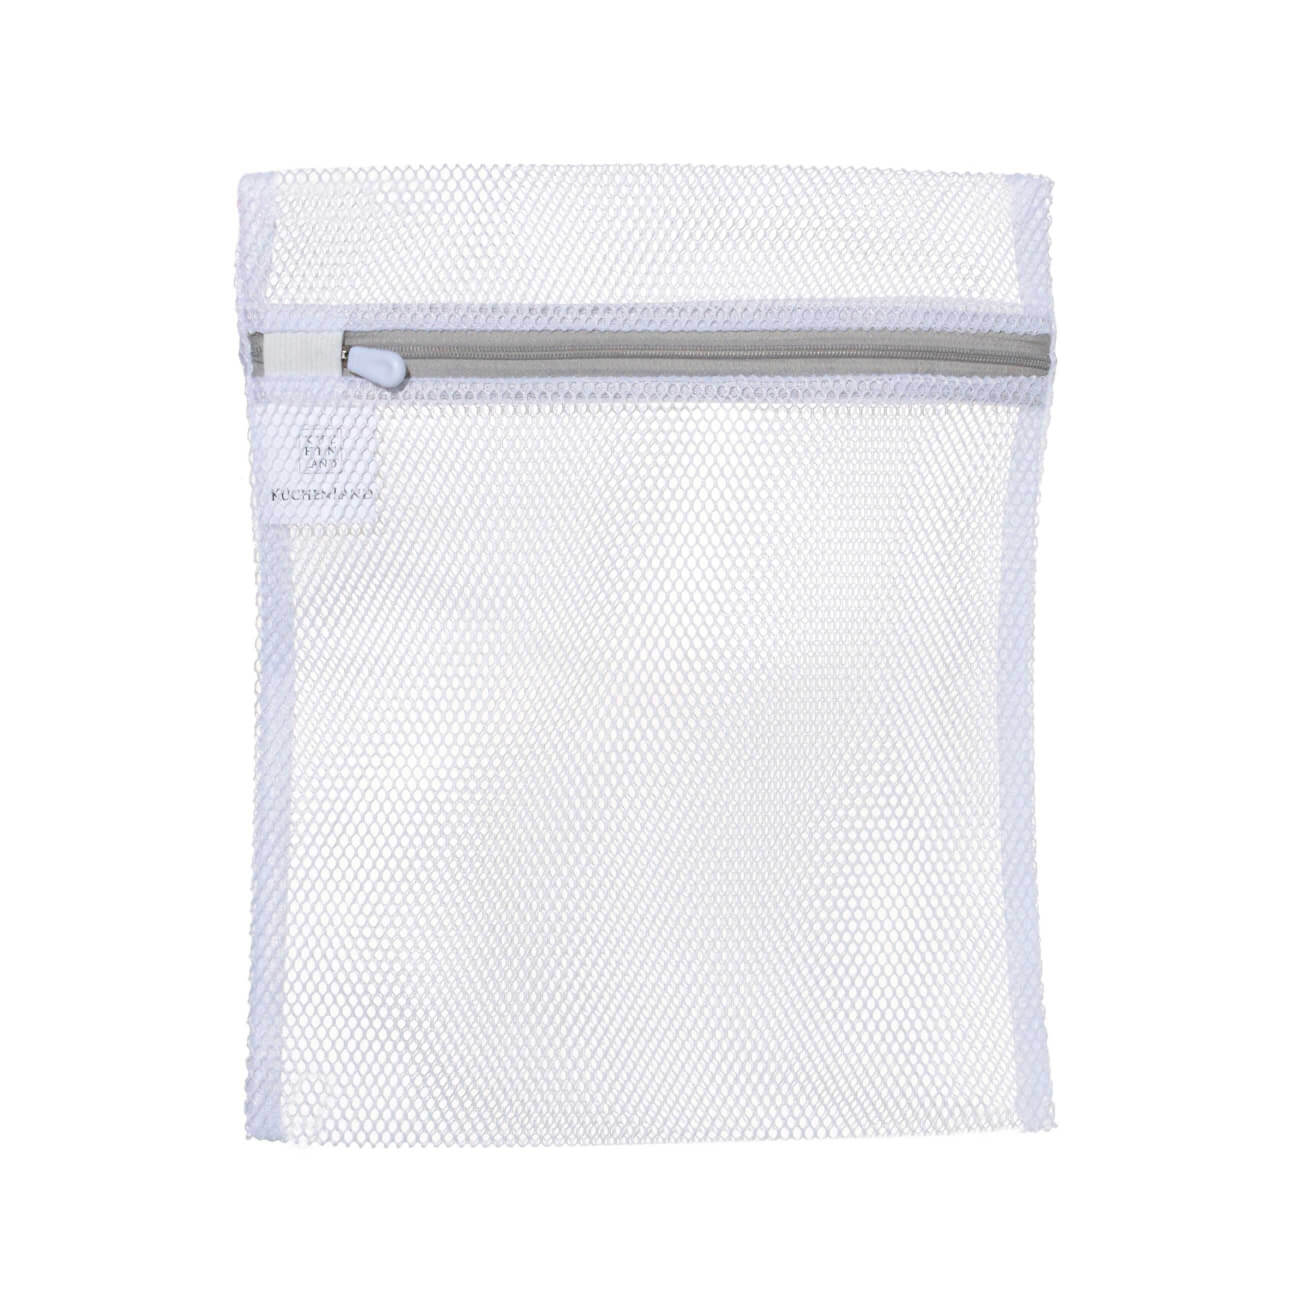 Мешок для стирки нижнего белья, 25х30 см, полиэстер, бело-серый, Safety мешок для стирки бюстгальтеров essentielb цвет белый